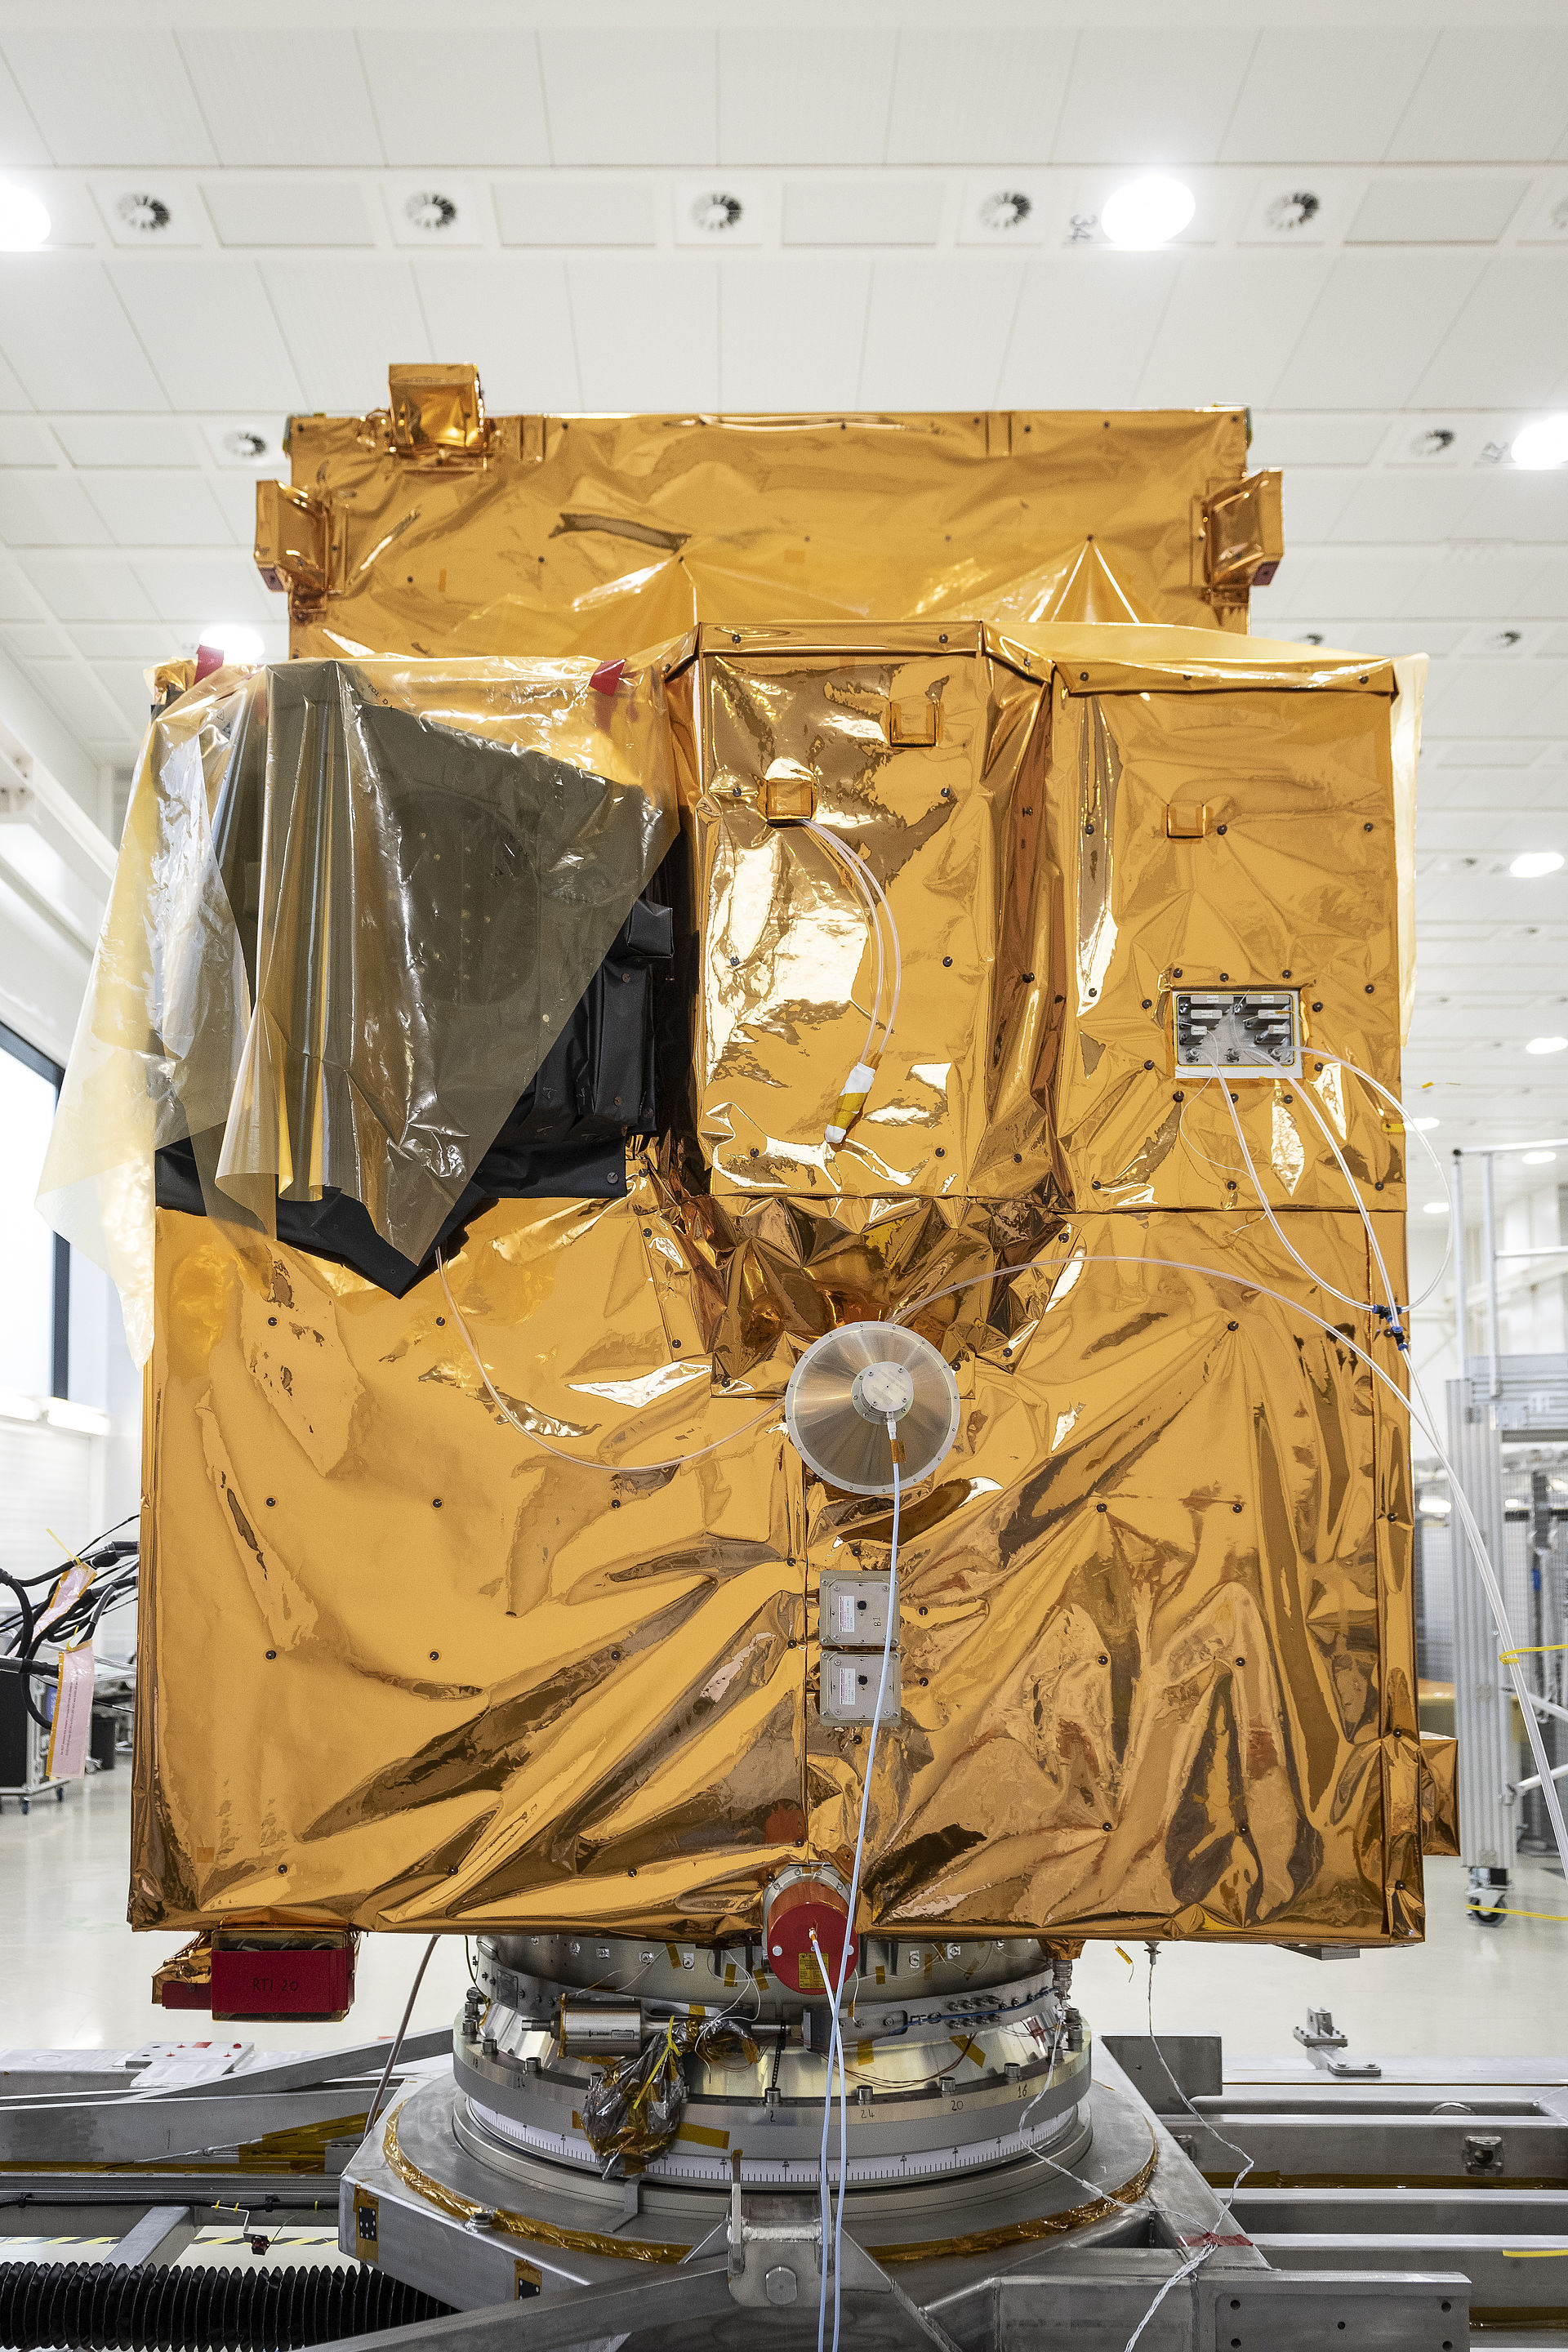 "Mit einem Satelliten aus Deutschland startet eine neue Ära der Erdbeobachtung"